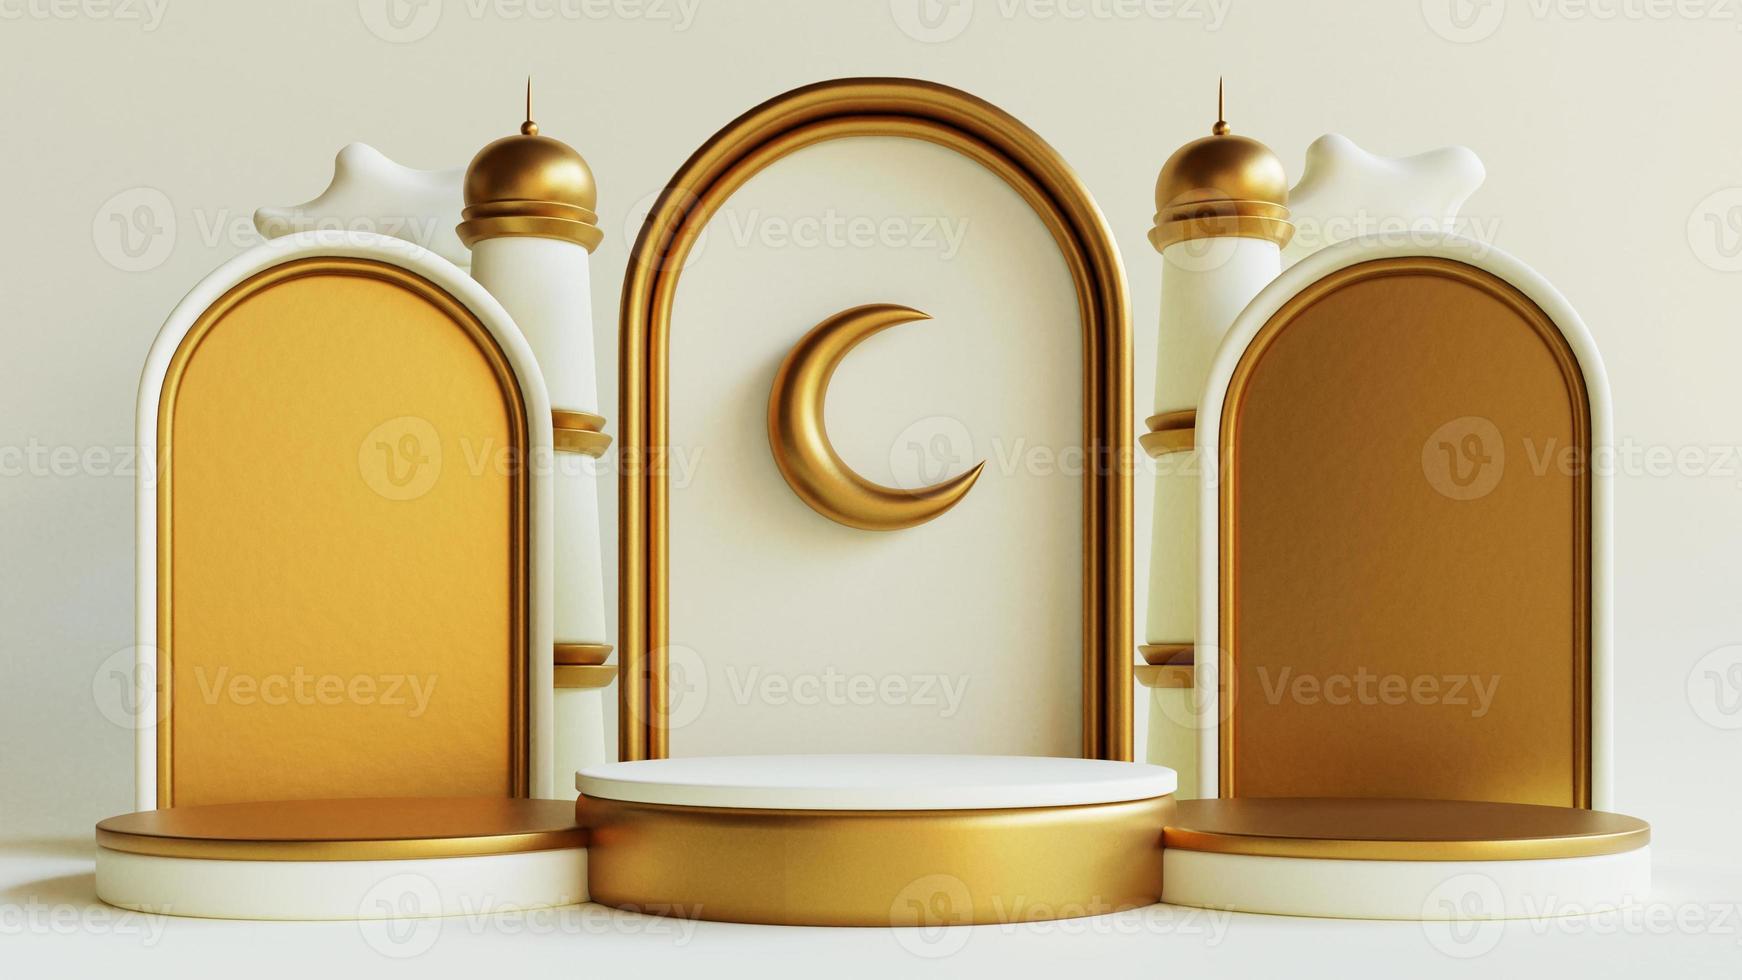 fond de voeux islamique ramadan kareem avec lanterne sur podium, mosquée et croissant de lune photo